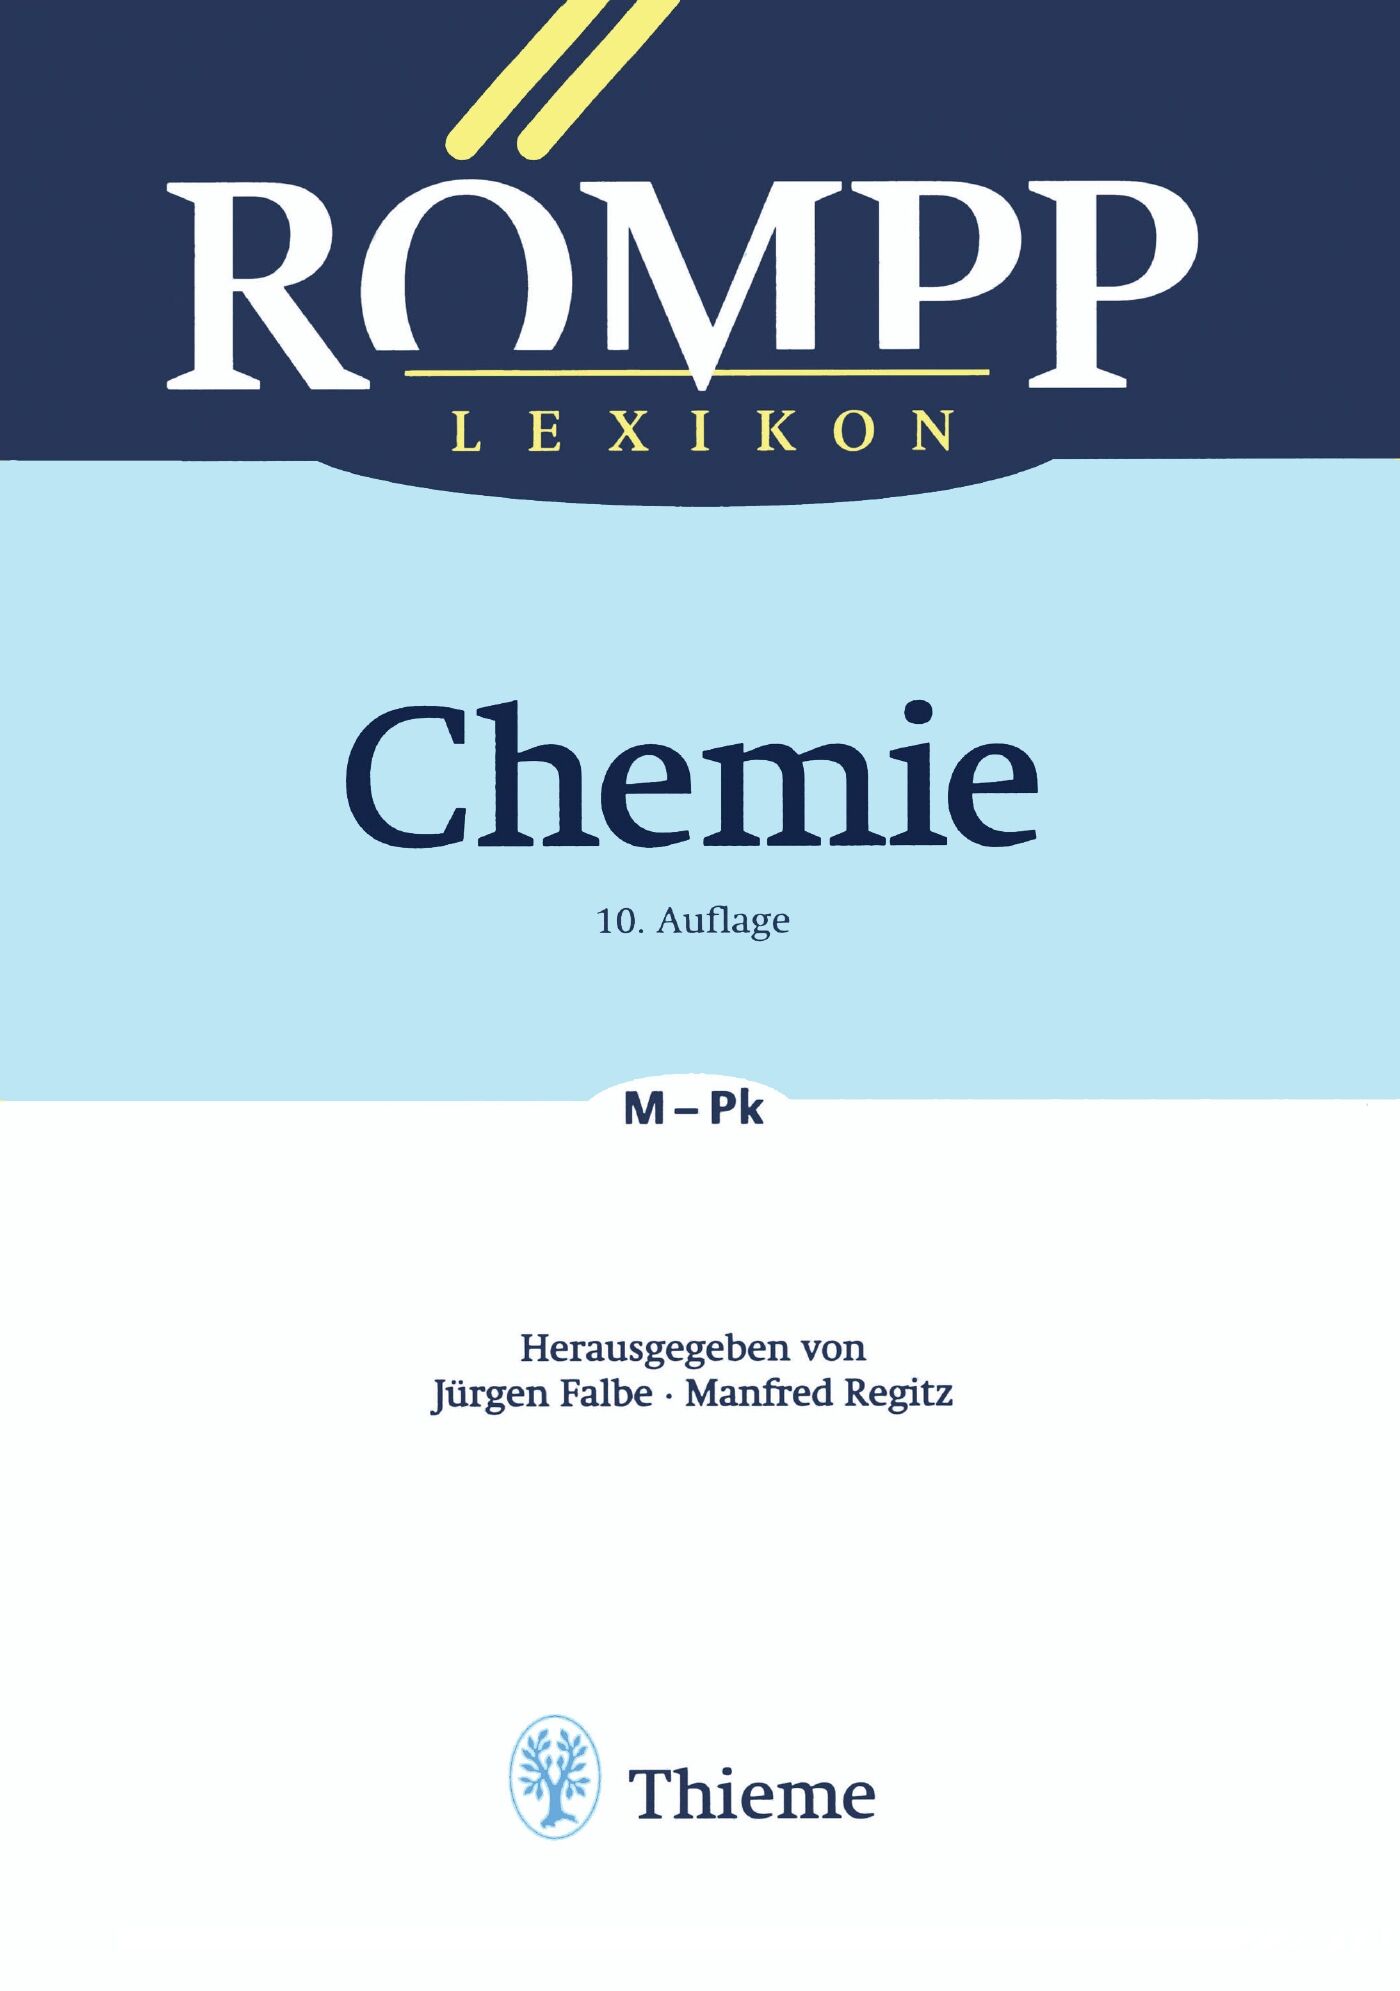 RÖMPP Lexikon Chemie, 10. Auflage, 1996-1999, 9783132000315